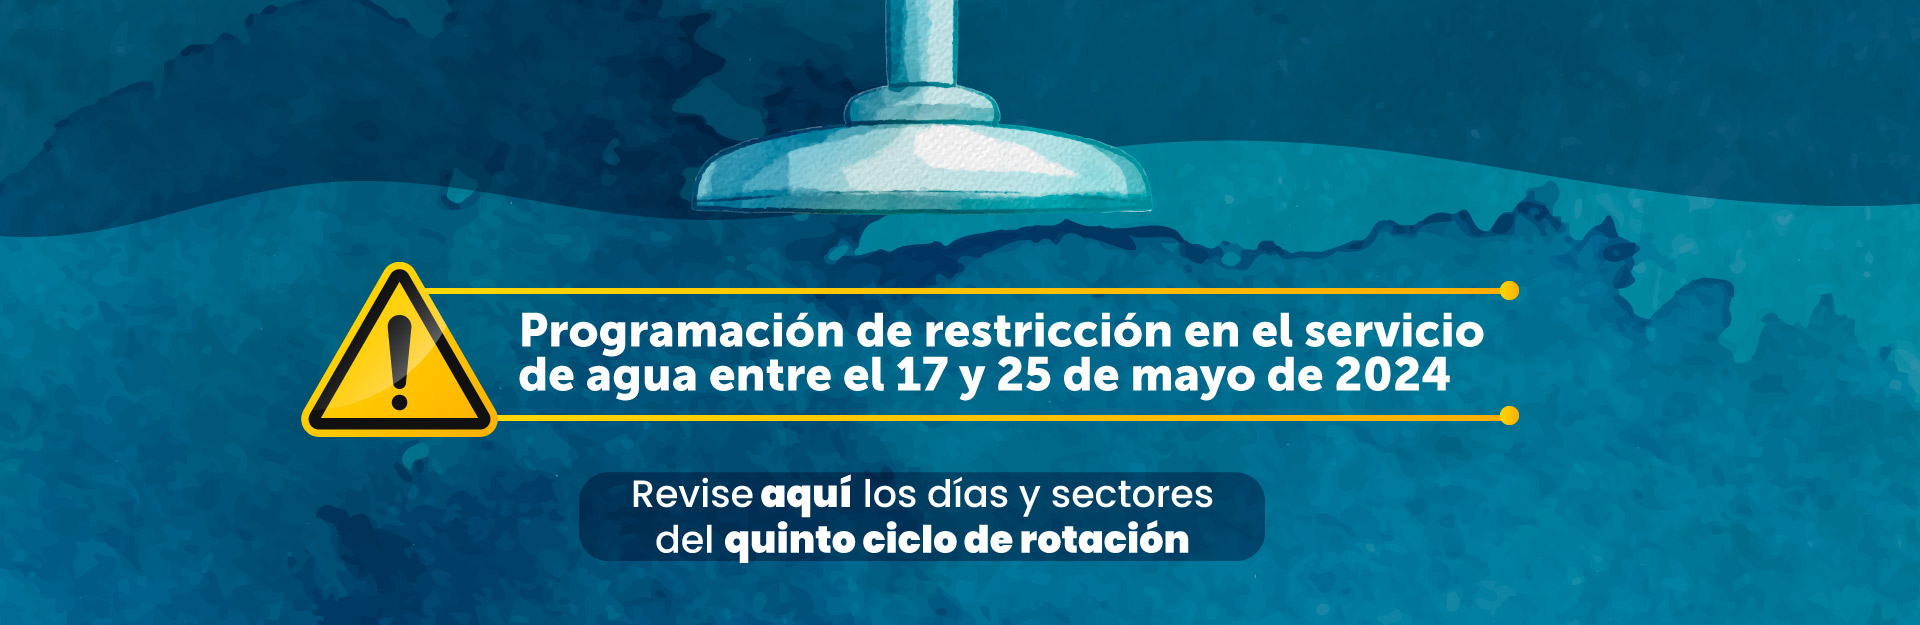 Turnos de restricción en el servicio de agua | Programación entre el 17 de mayo y el 25 de mayo de 2024